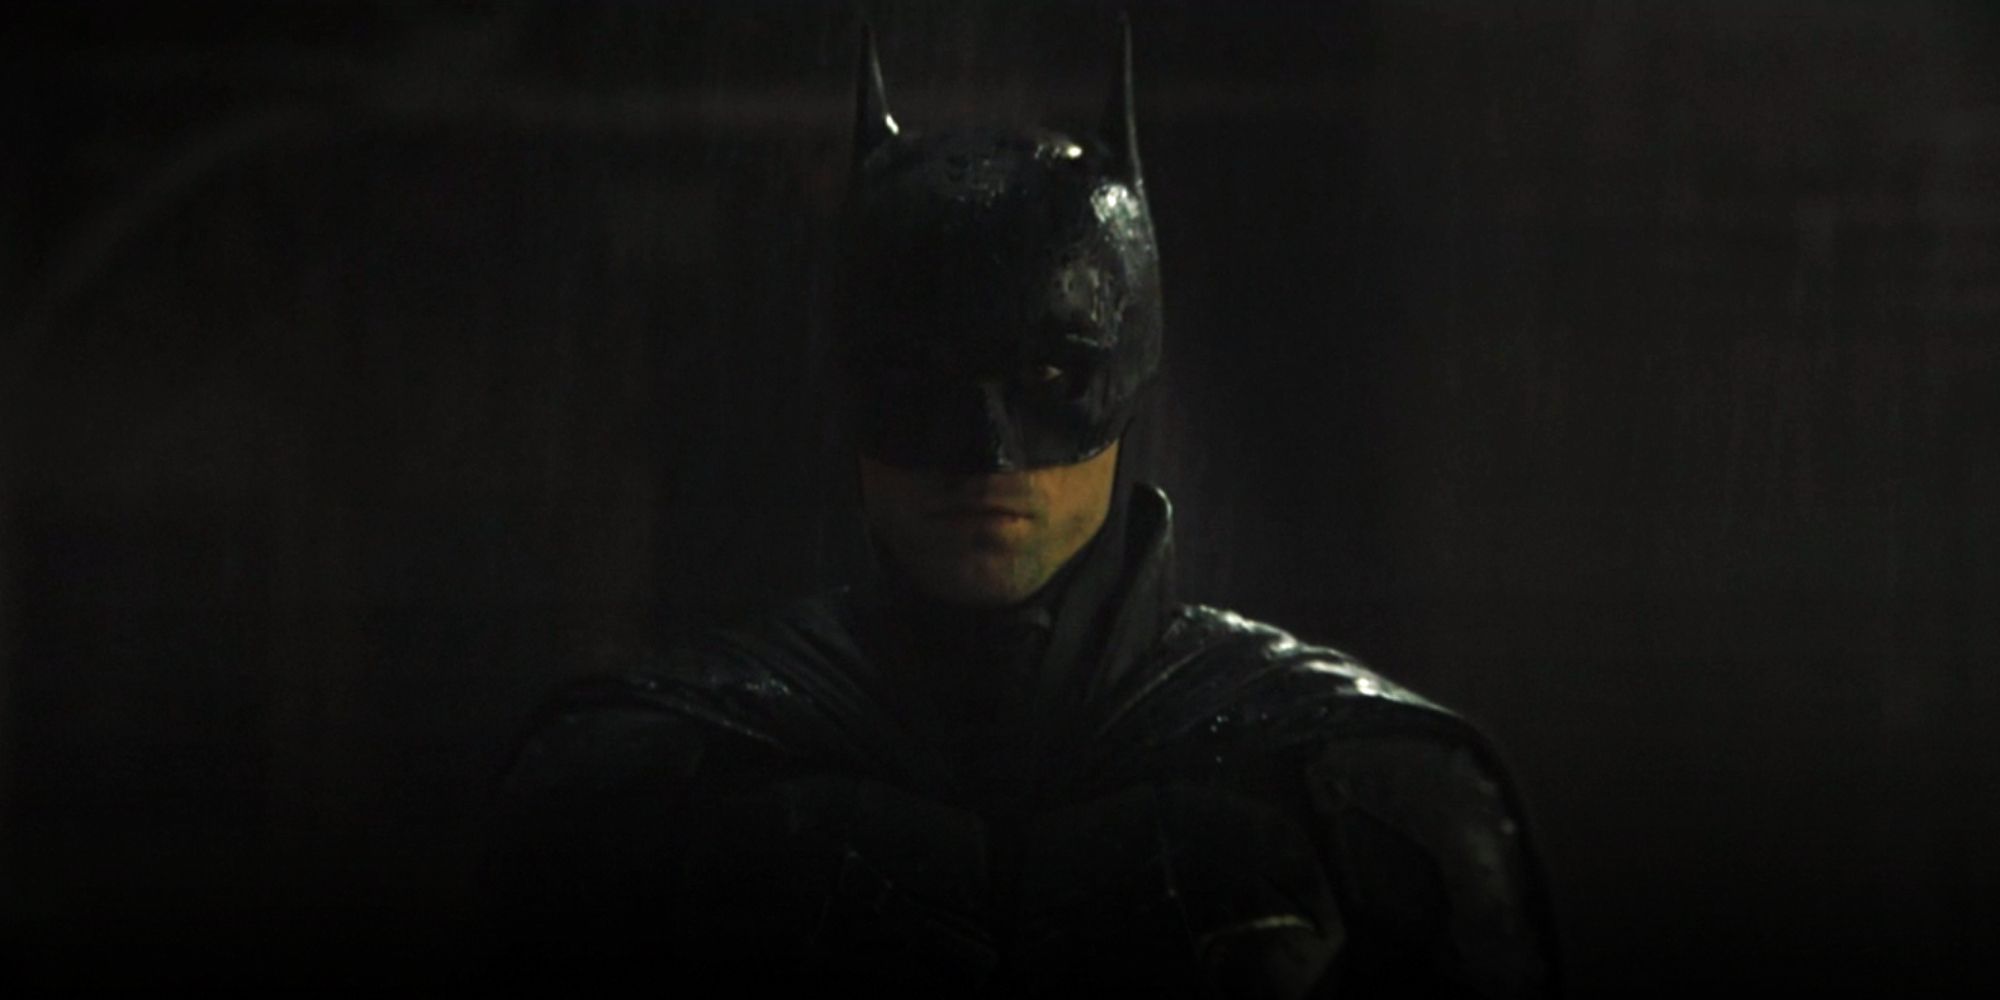 Robert Pattinson as Batman marching through the rain in The Batman 2022